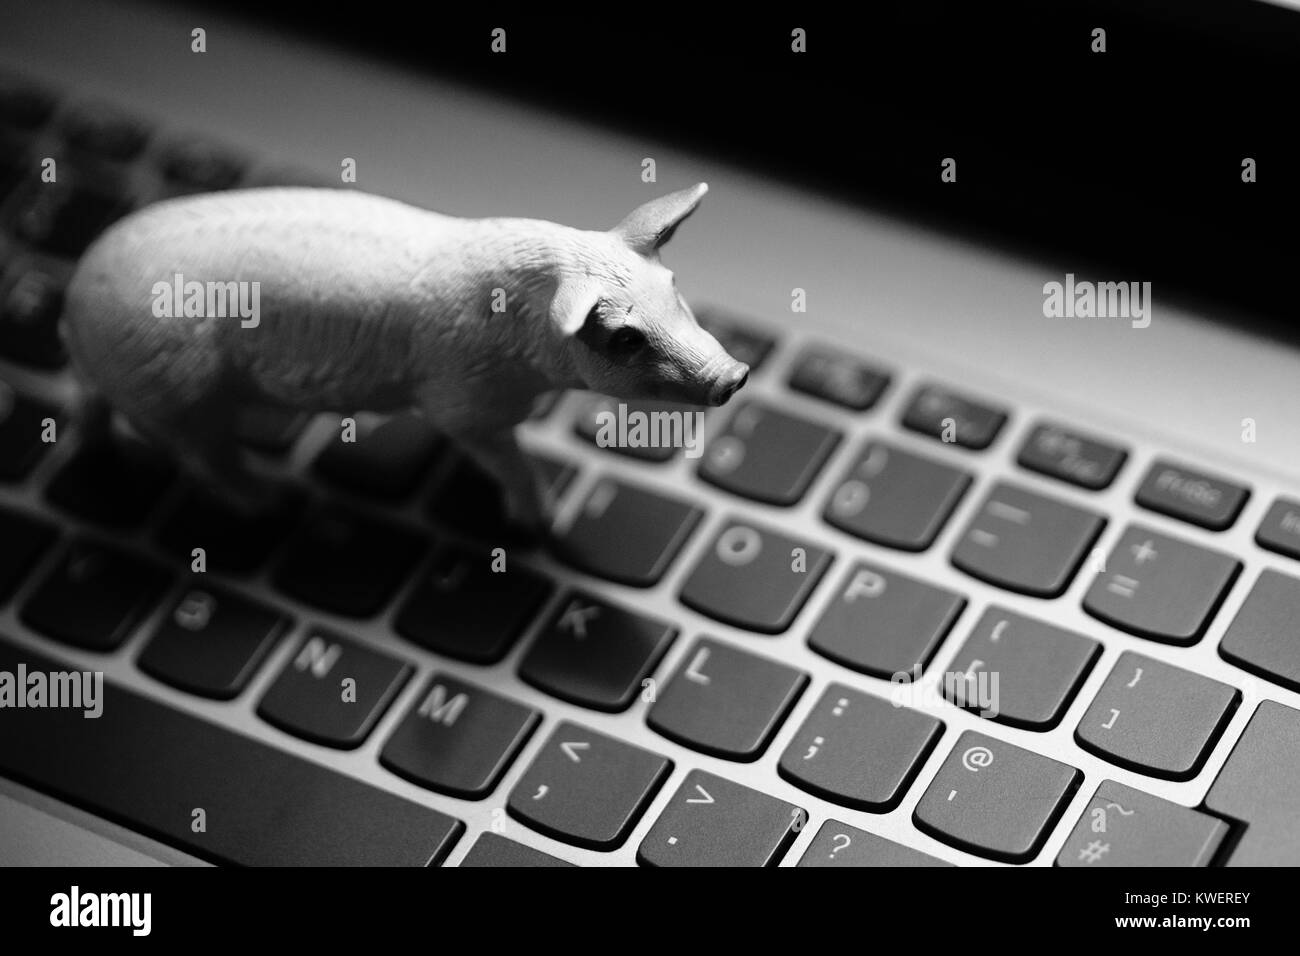 Spielzeug Schwein am Laptop Tastatur - heimische Tiere und Landwirtschaft im digitalen Zeitalter Stockfoto